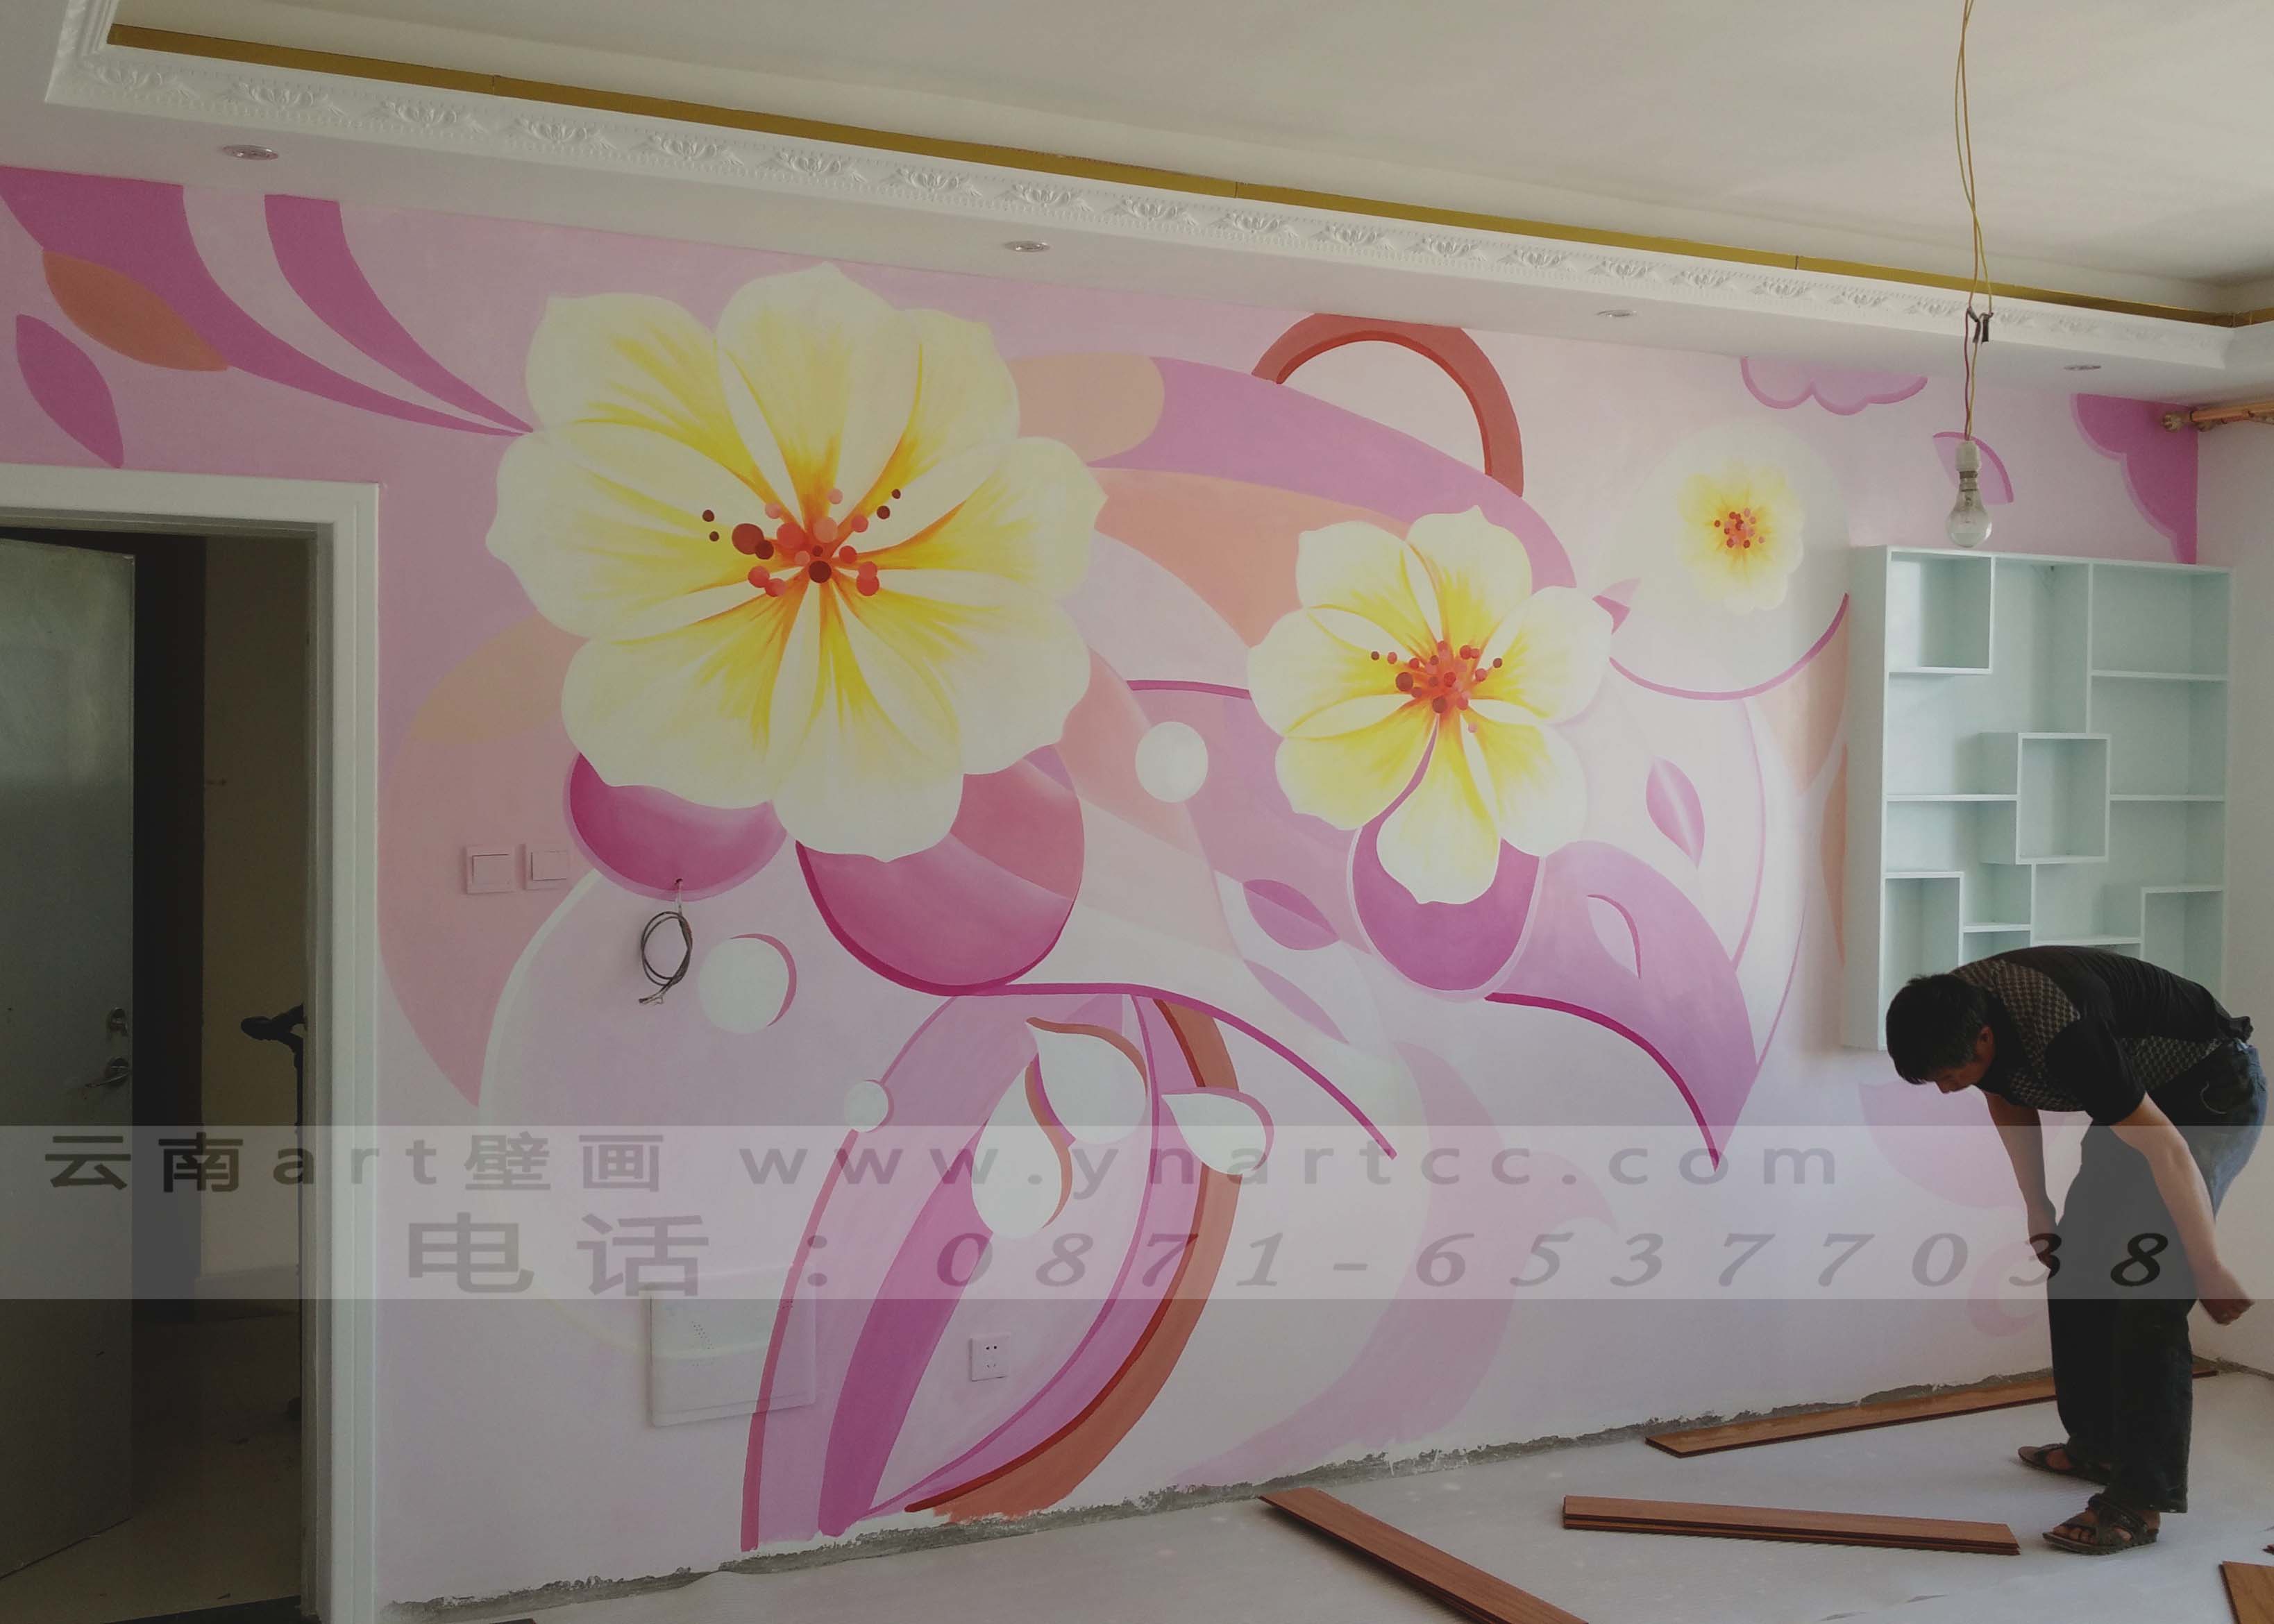 昆明墙体彩绘教你如何用墙绘颜色装饰自己的家